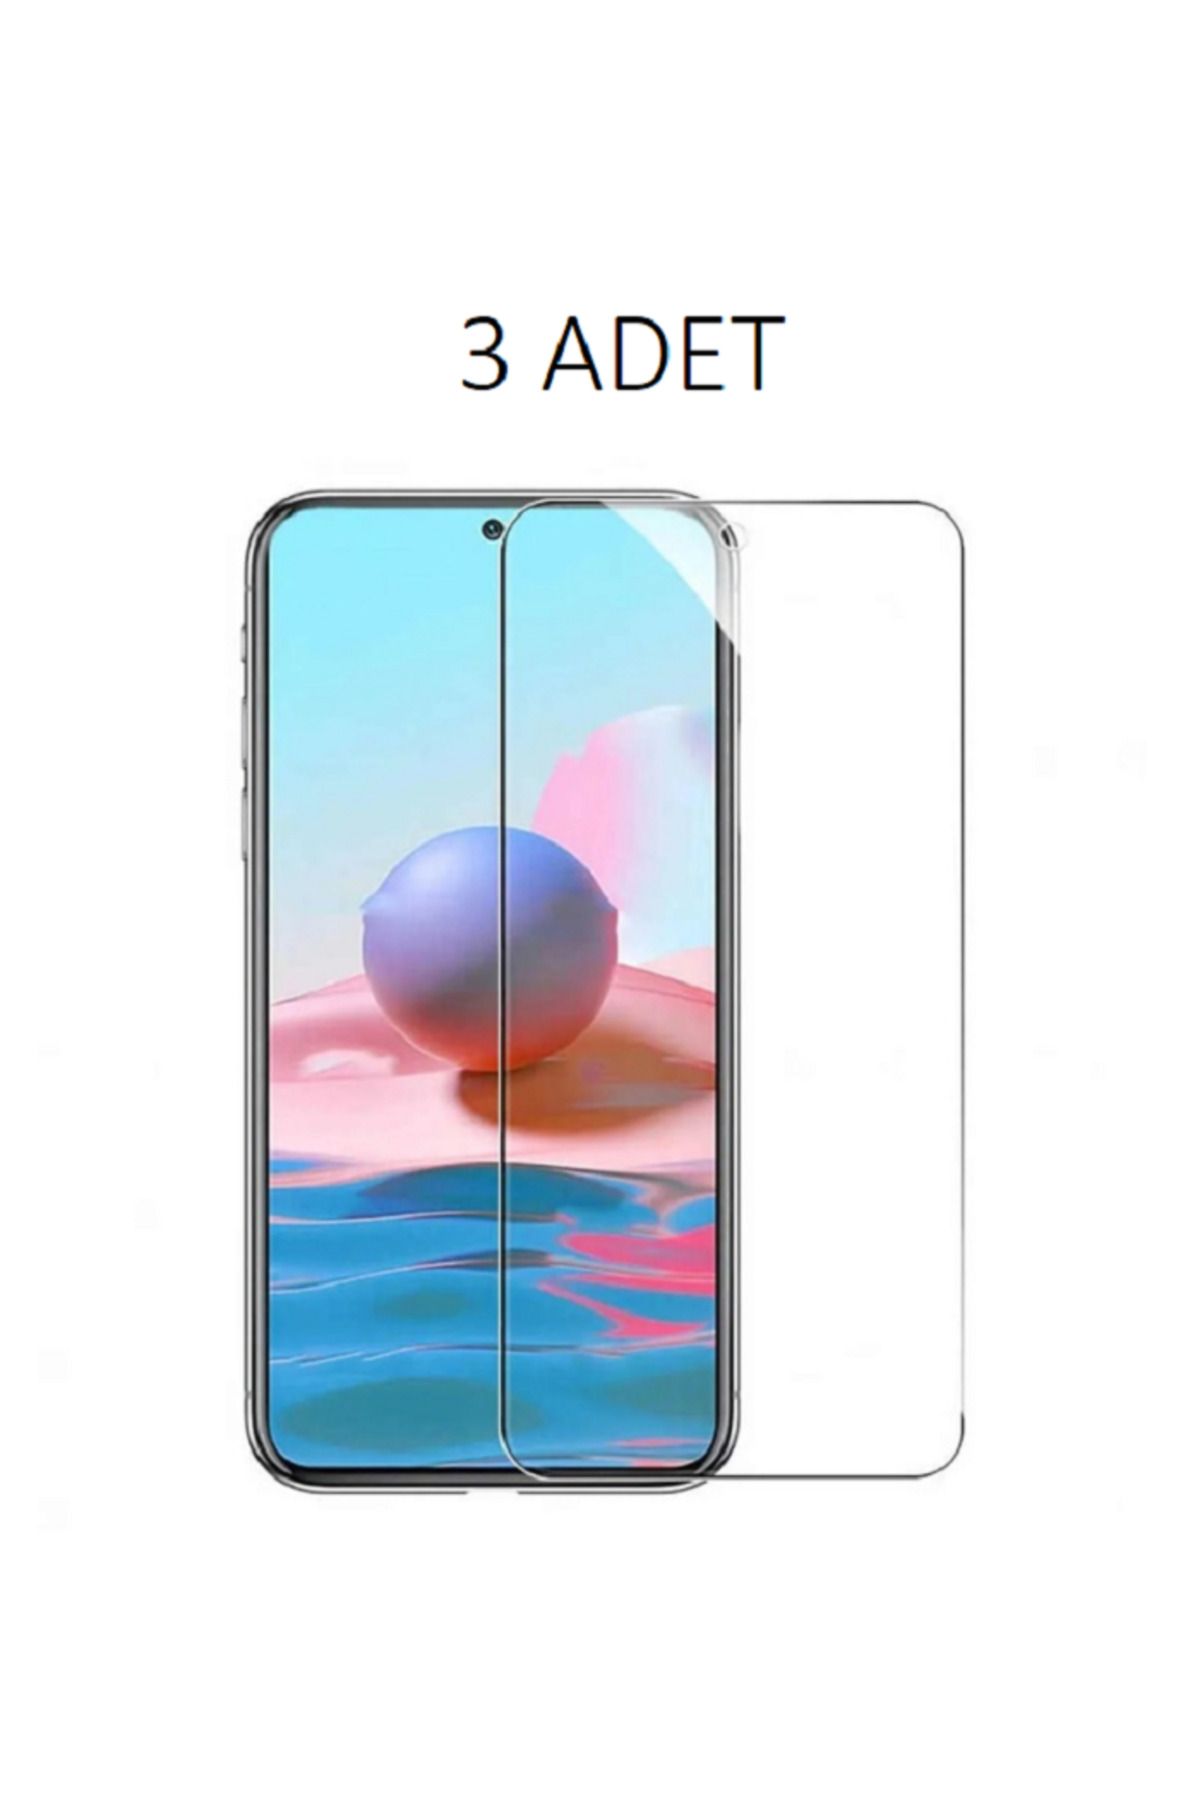 LG 3 ADET LG K40S Uyumlu Şeffaf Esnek Nano Ekran Koruyucu